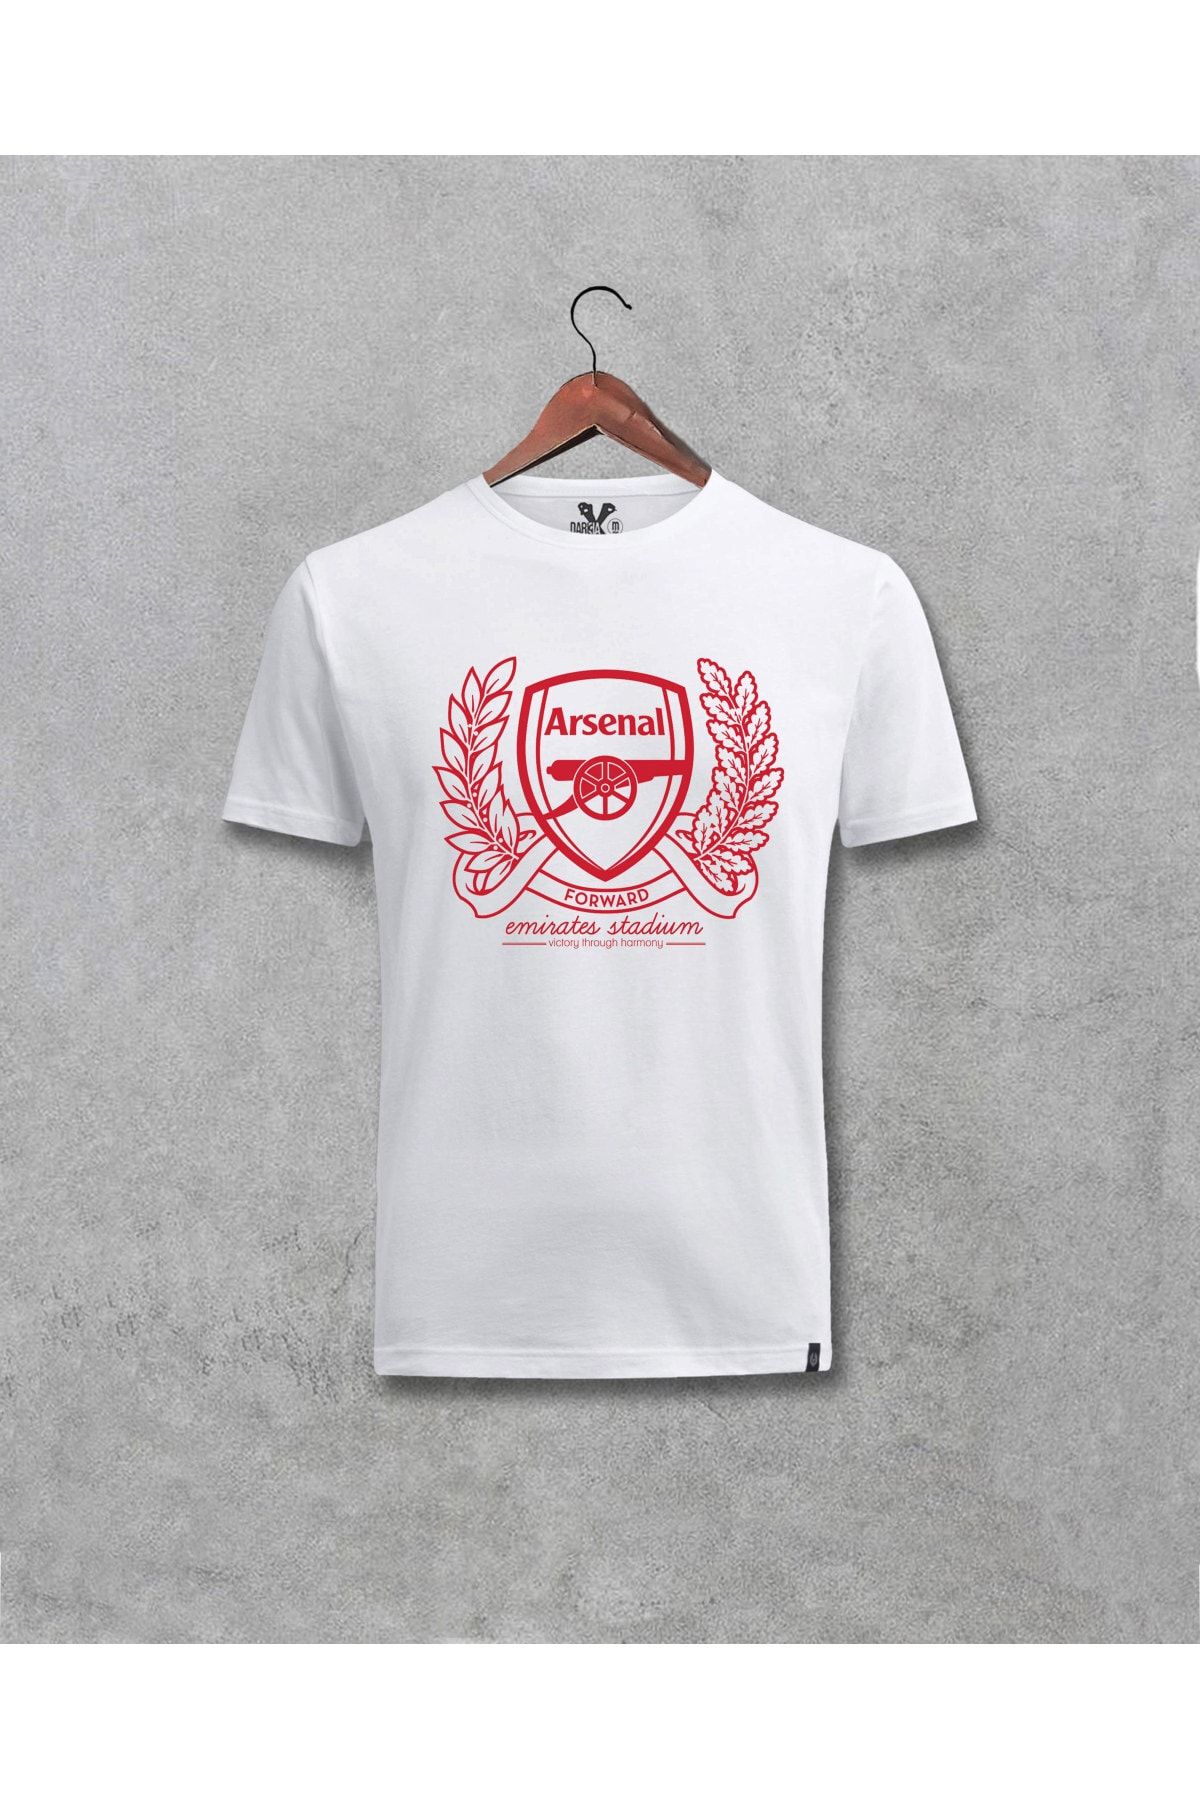 Darkia Unisex Arsenal Futbol Takımı Özel Tasarım Baskılı Tişört